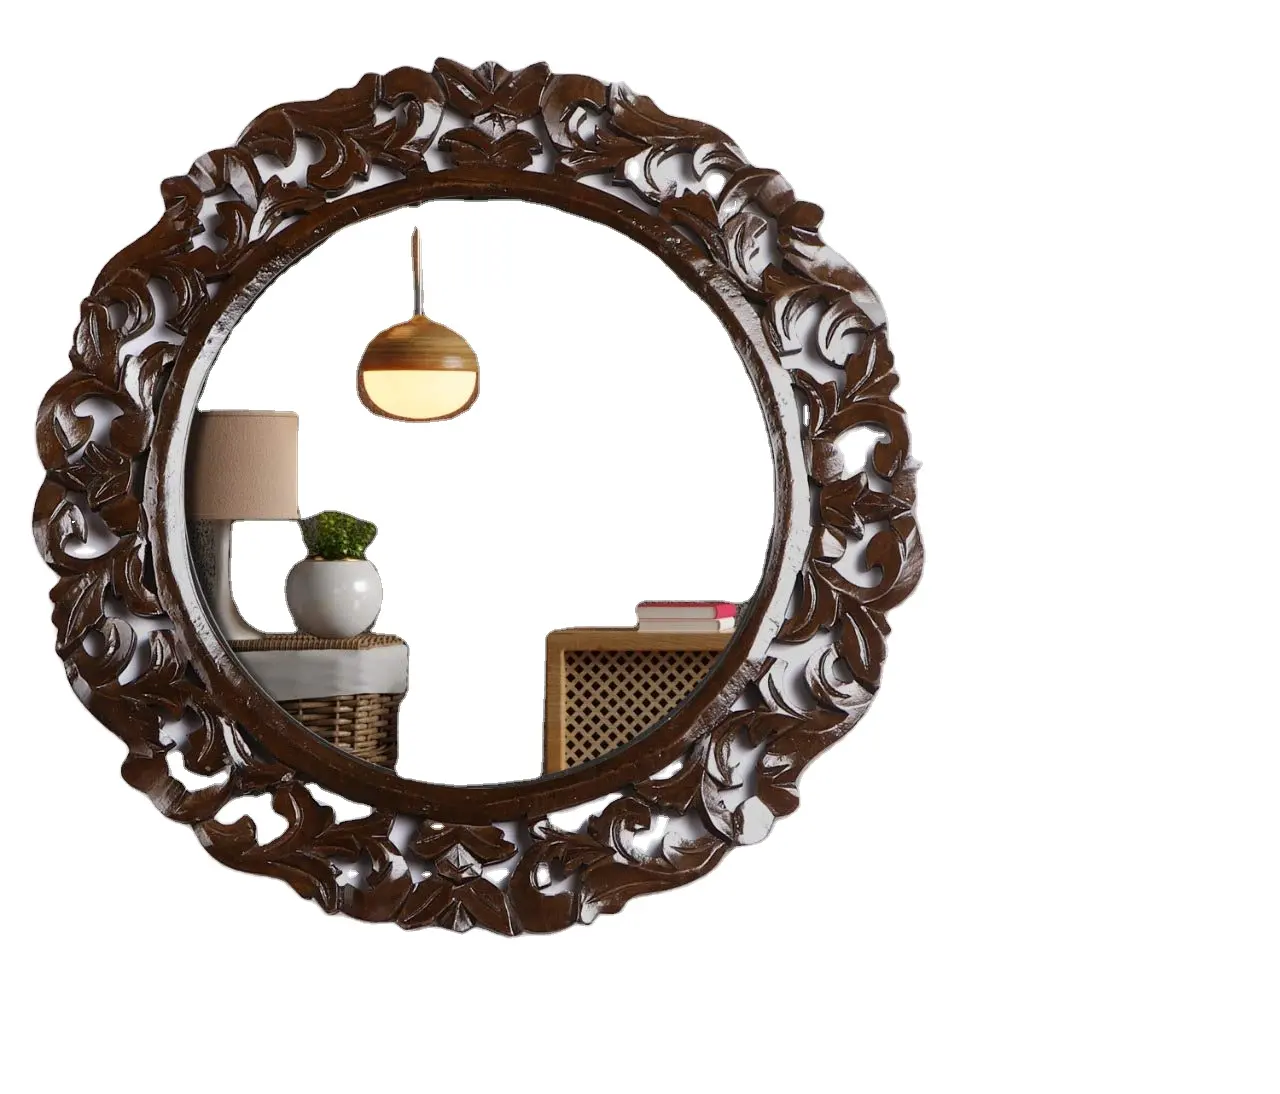 جديد المنتج إطار خشبي مرآة حائطية مستديرة للحمام غرفة المعيشة المدخل نوم الزخرفية كبيرة